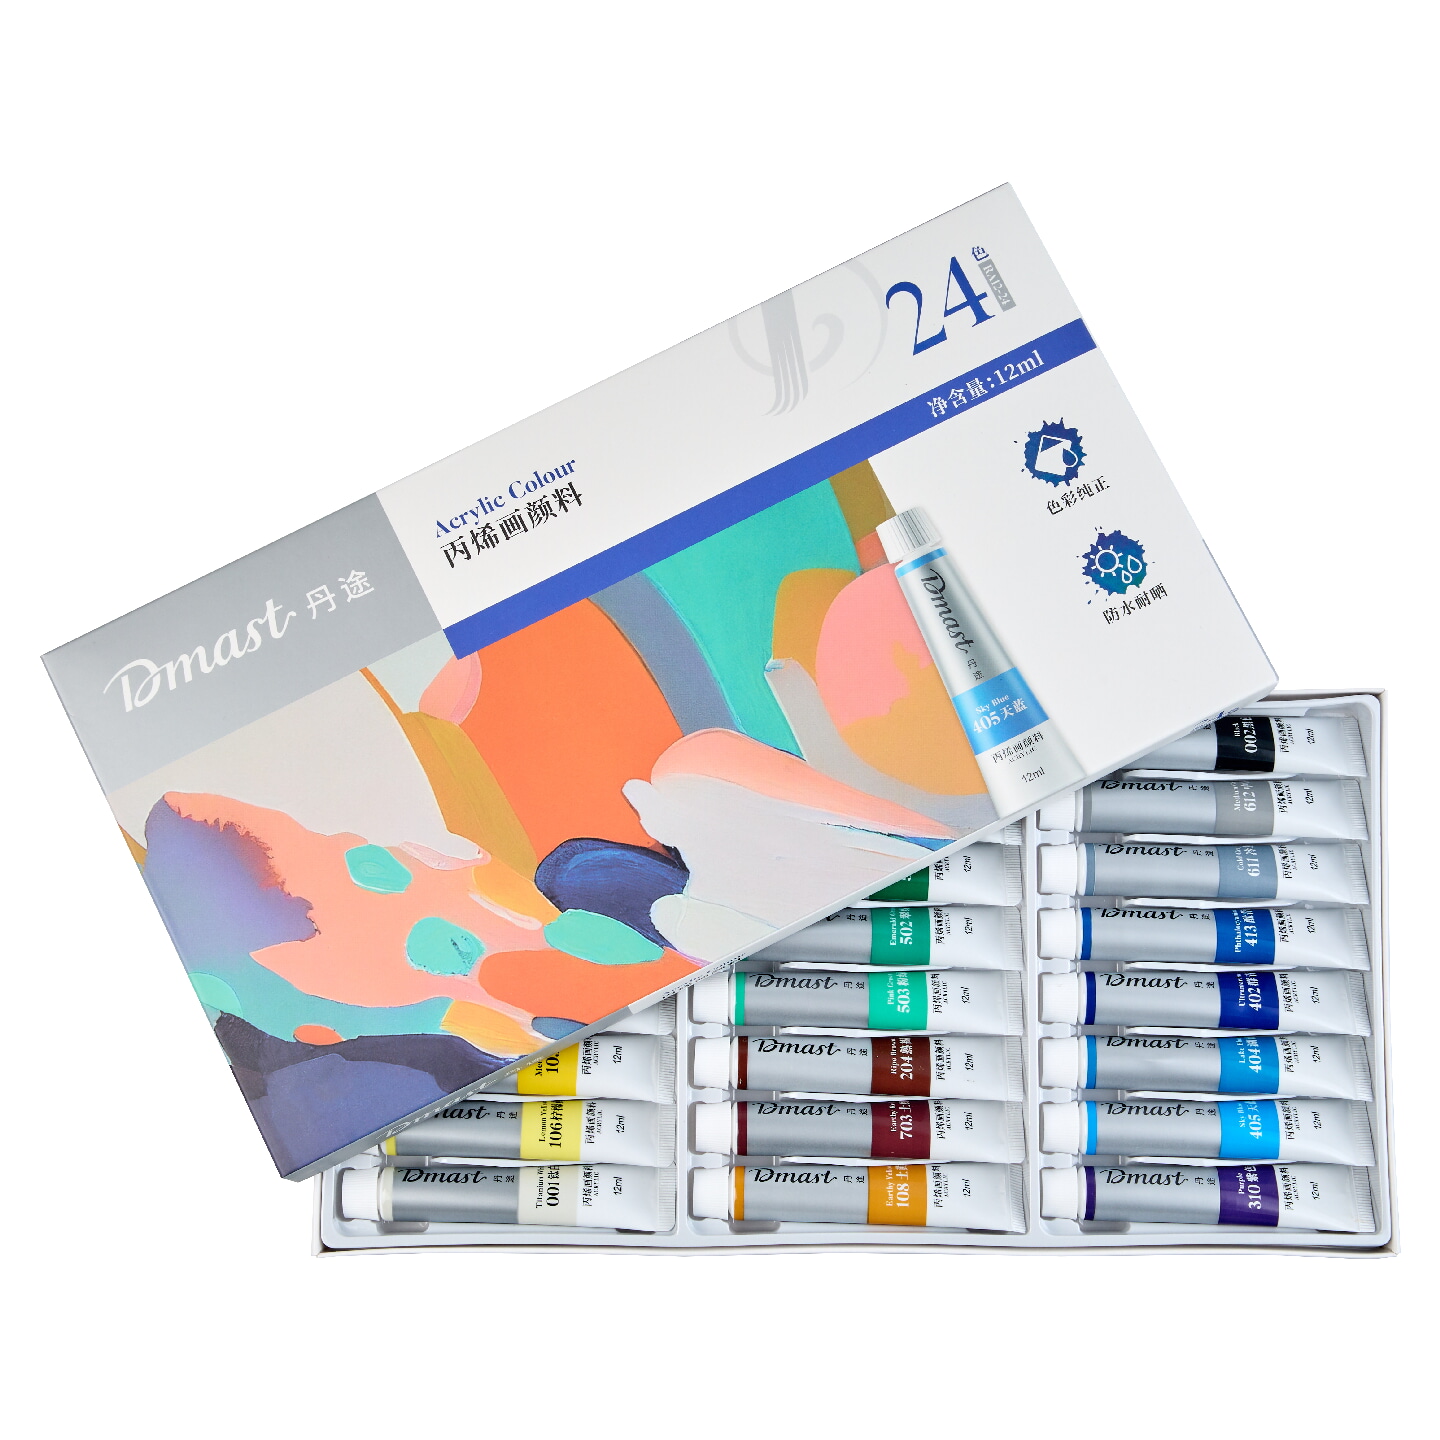 Набор акриловых красок Dmast by Pebeo 24 тубы по 12мл в картонной упаковке